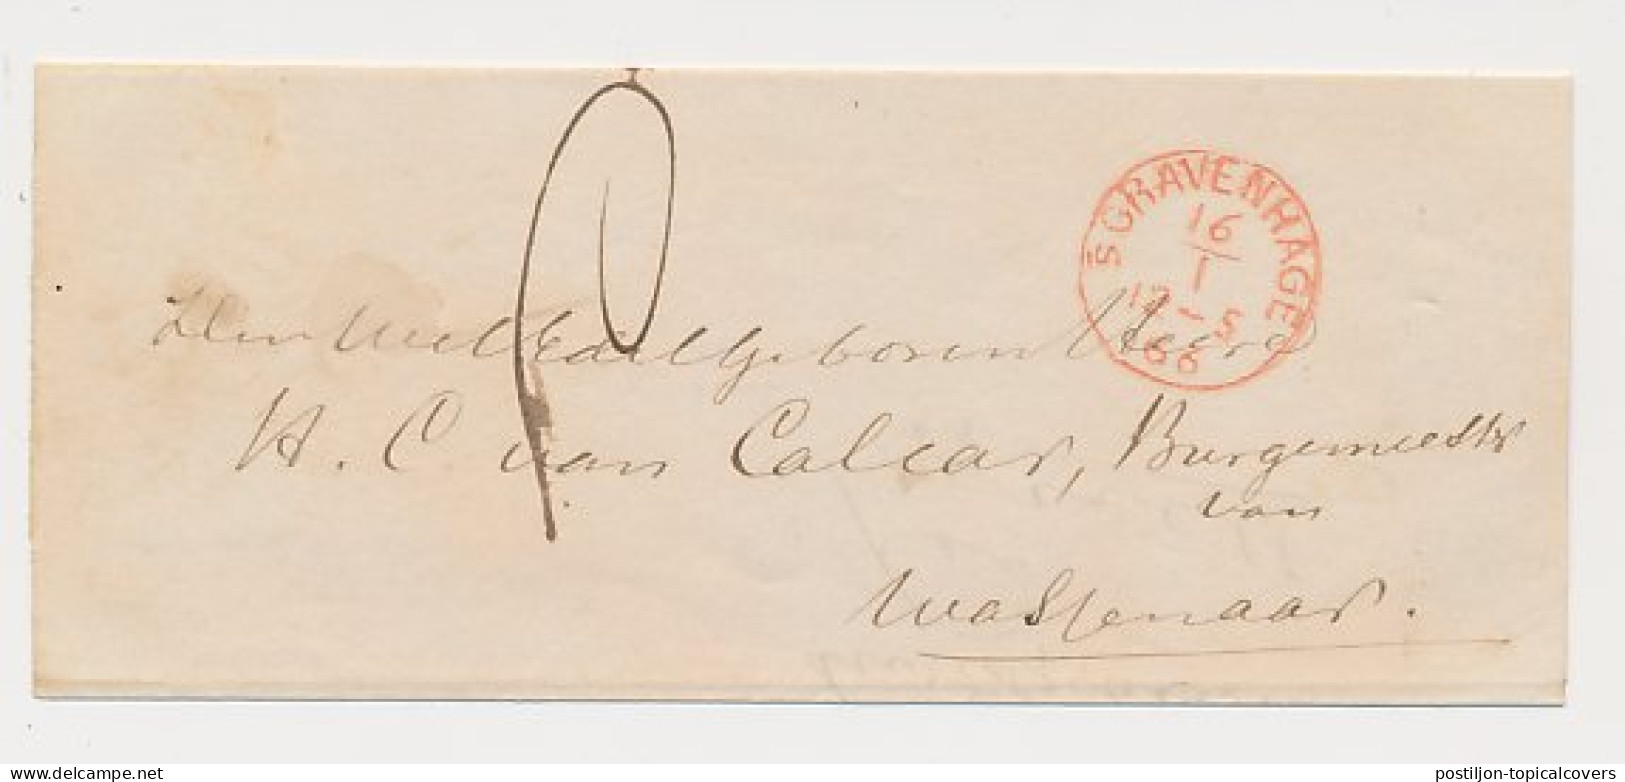 Den Haag - Wassenaar 1866 - Proefstempel - ...-1852 Voorlopers